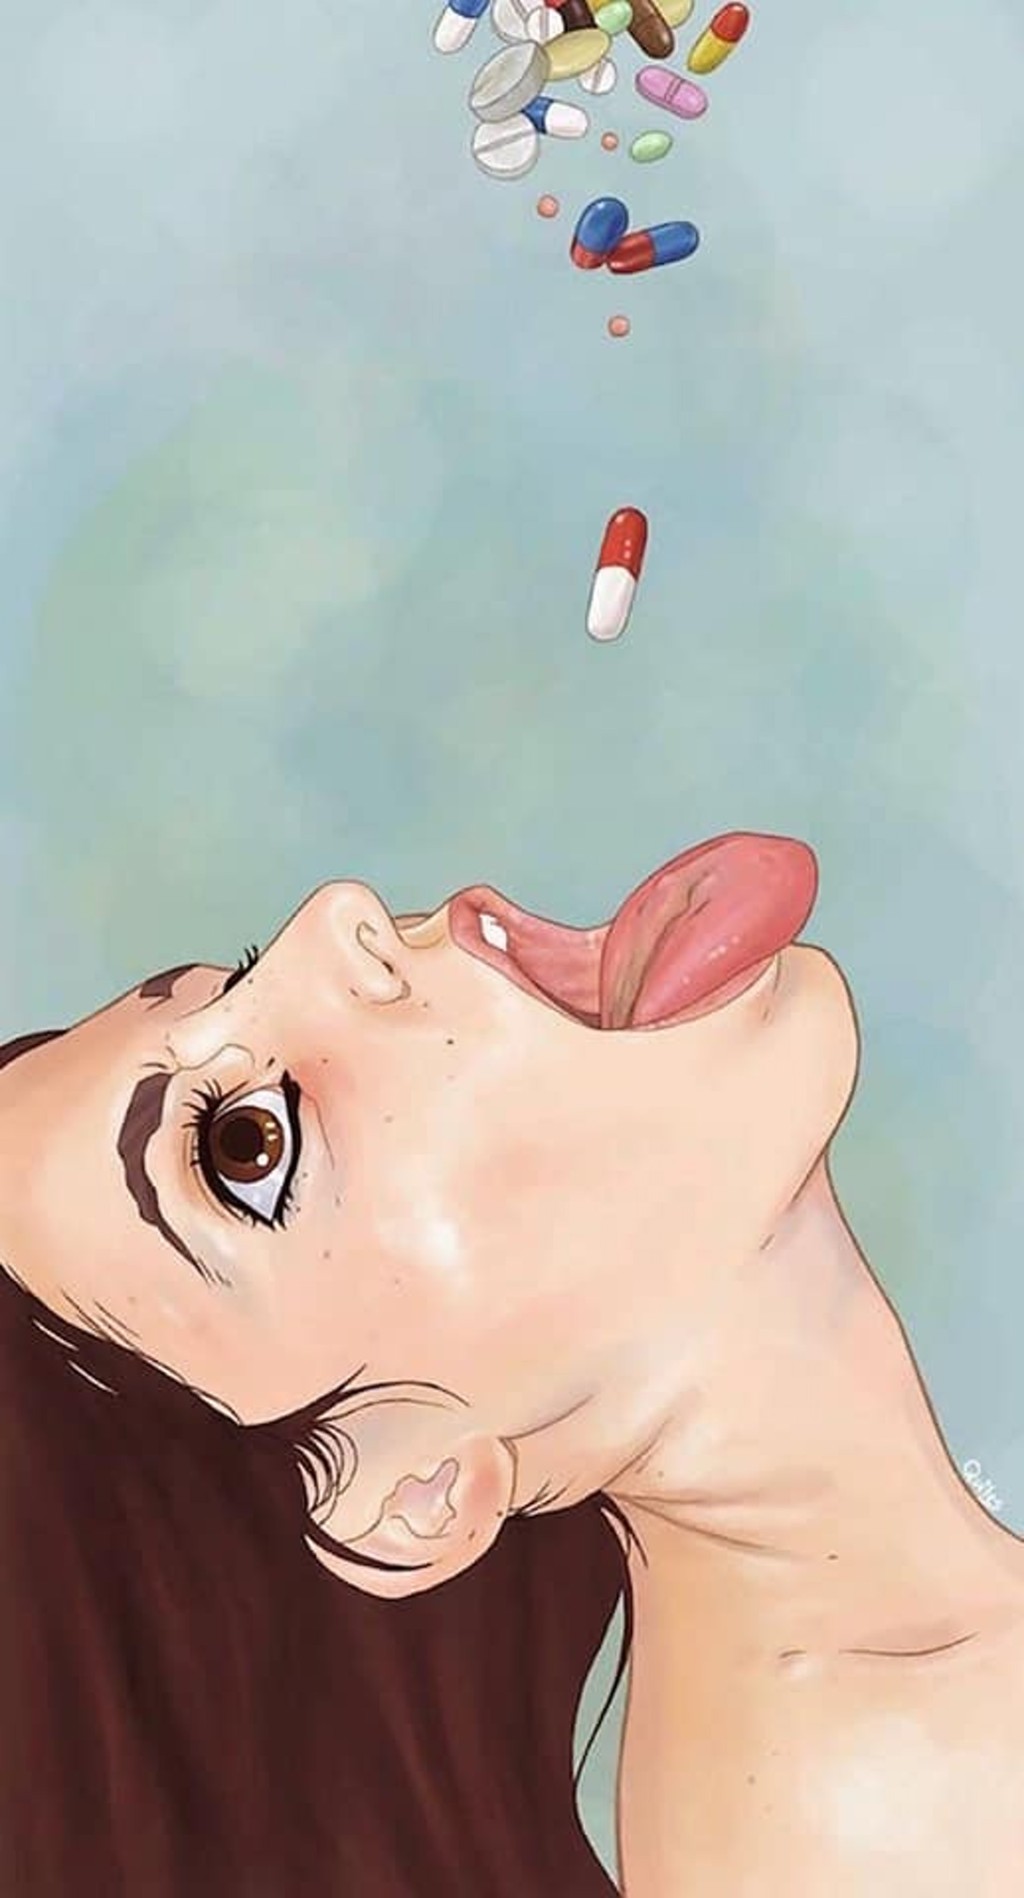 女子抬头张口一张准备掉大量掉下药丸的图画被放在留言区。fb